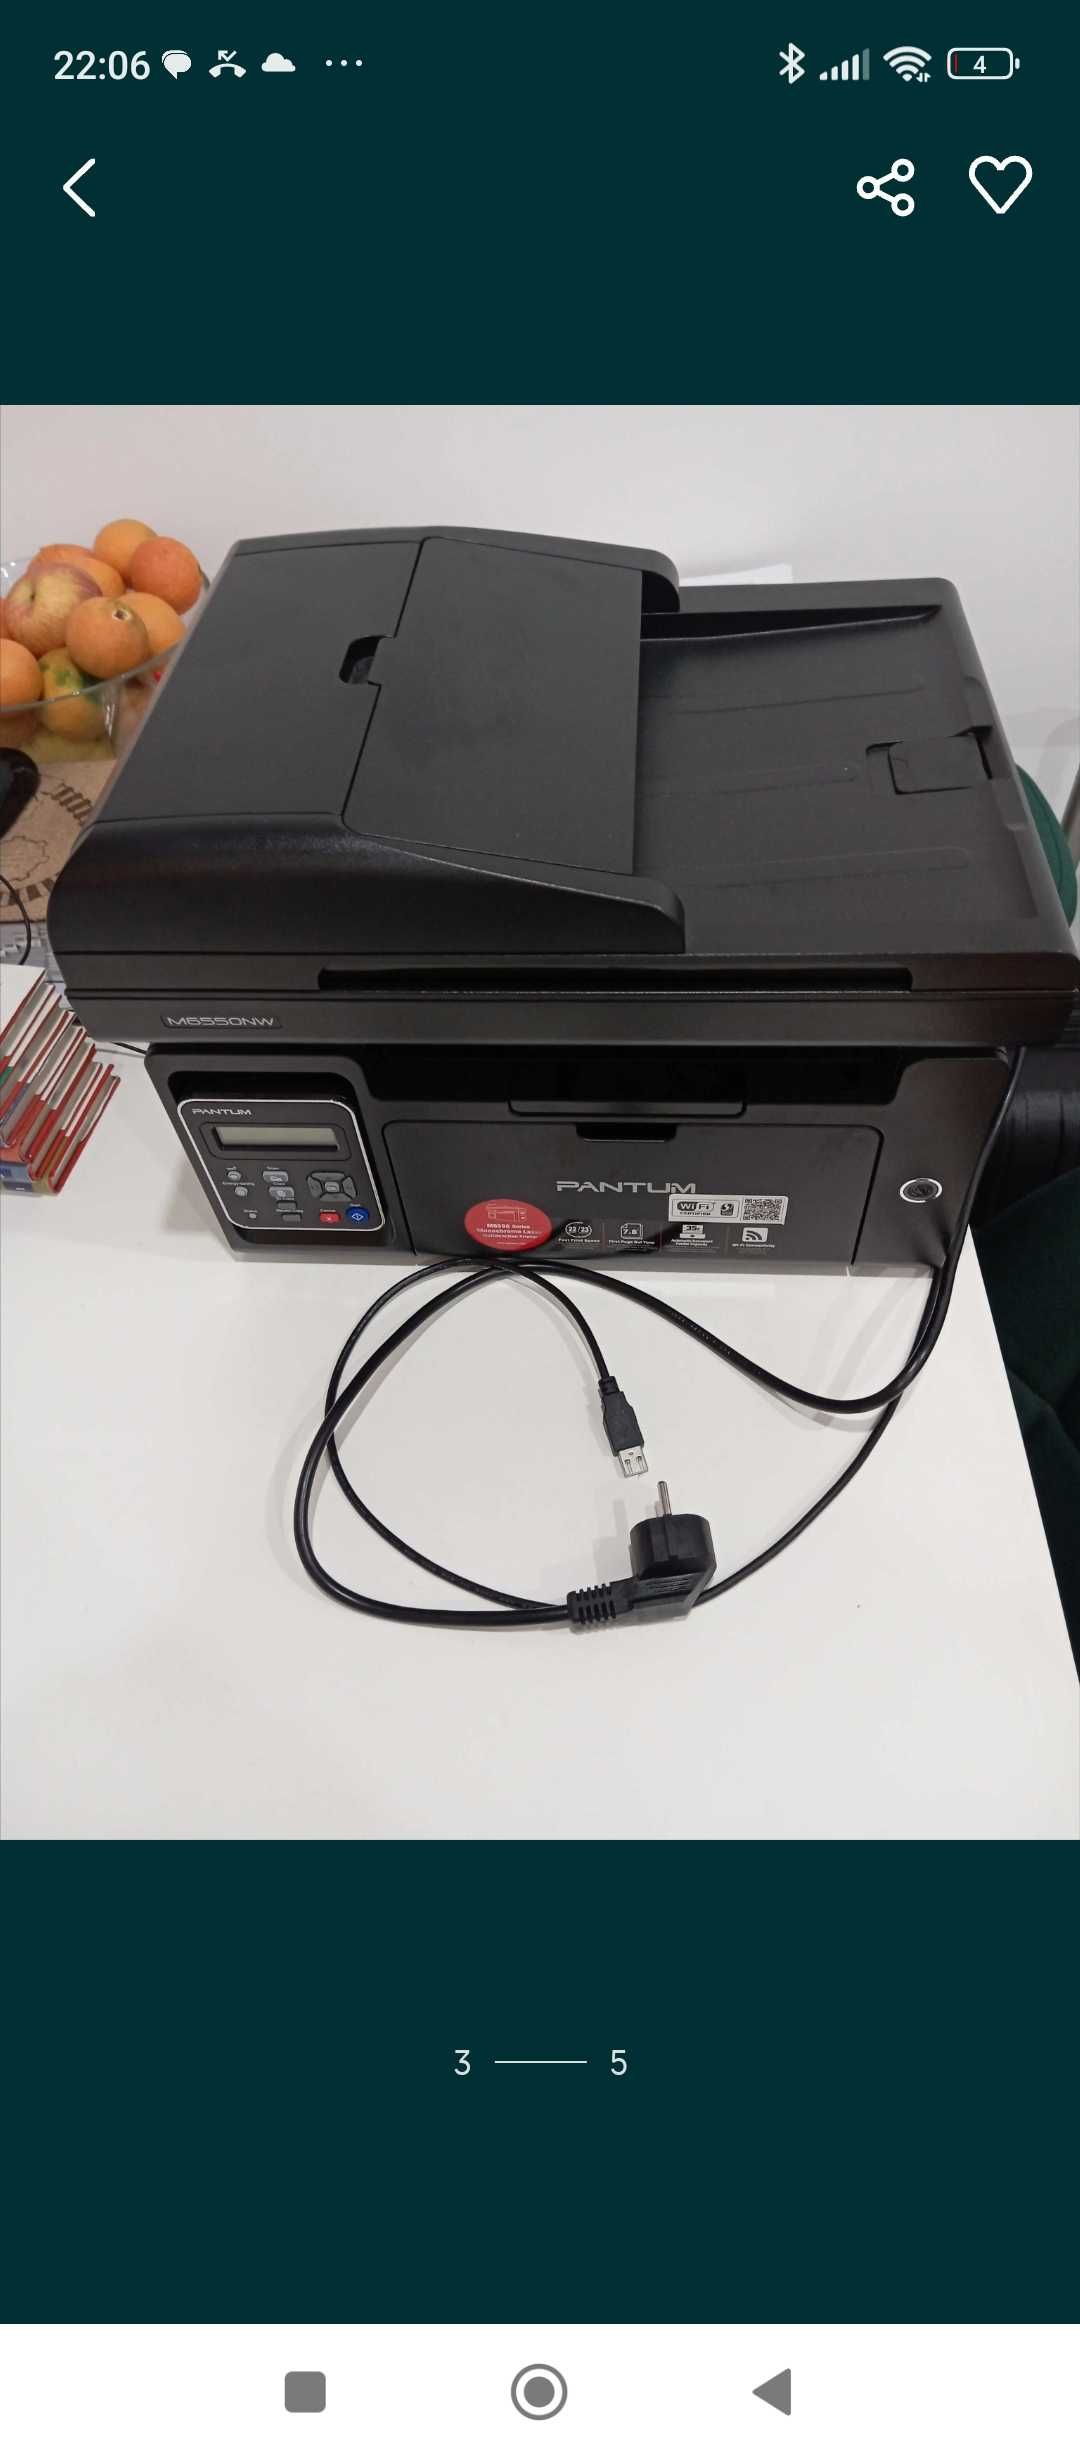 Impressora e digitalizadora multifunções PANTUM  M6550NW, como nova